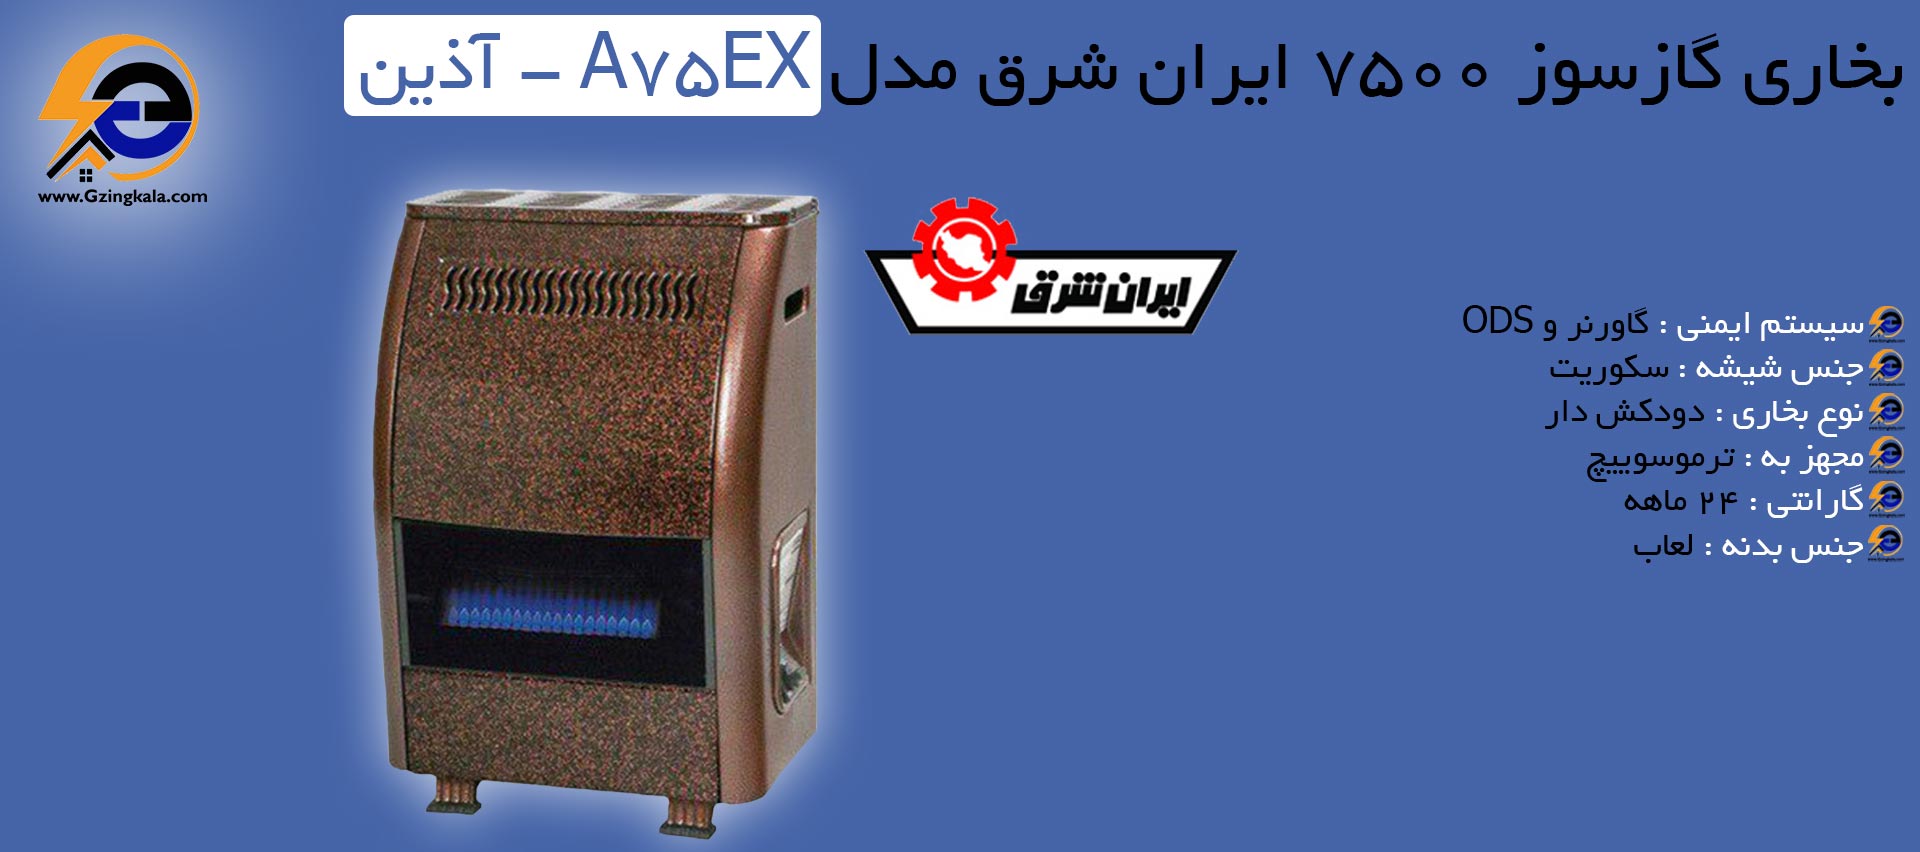 بخاری گازسوز 7500 ایران شرق مدل A75EX - آذین